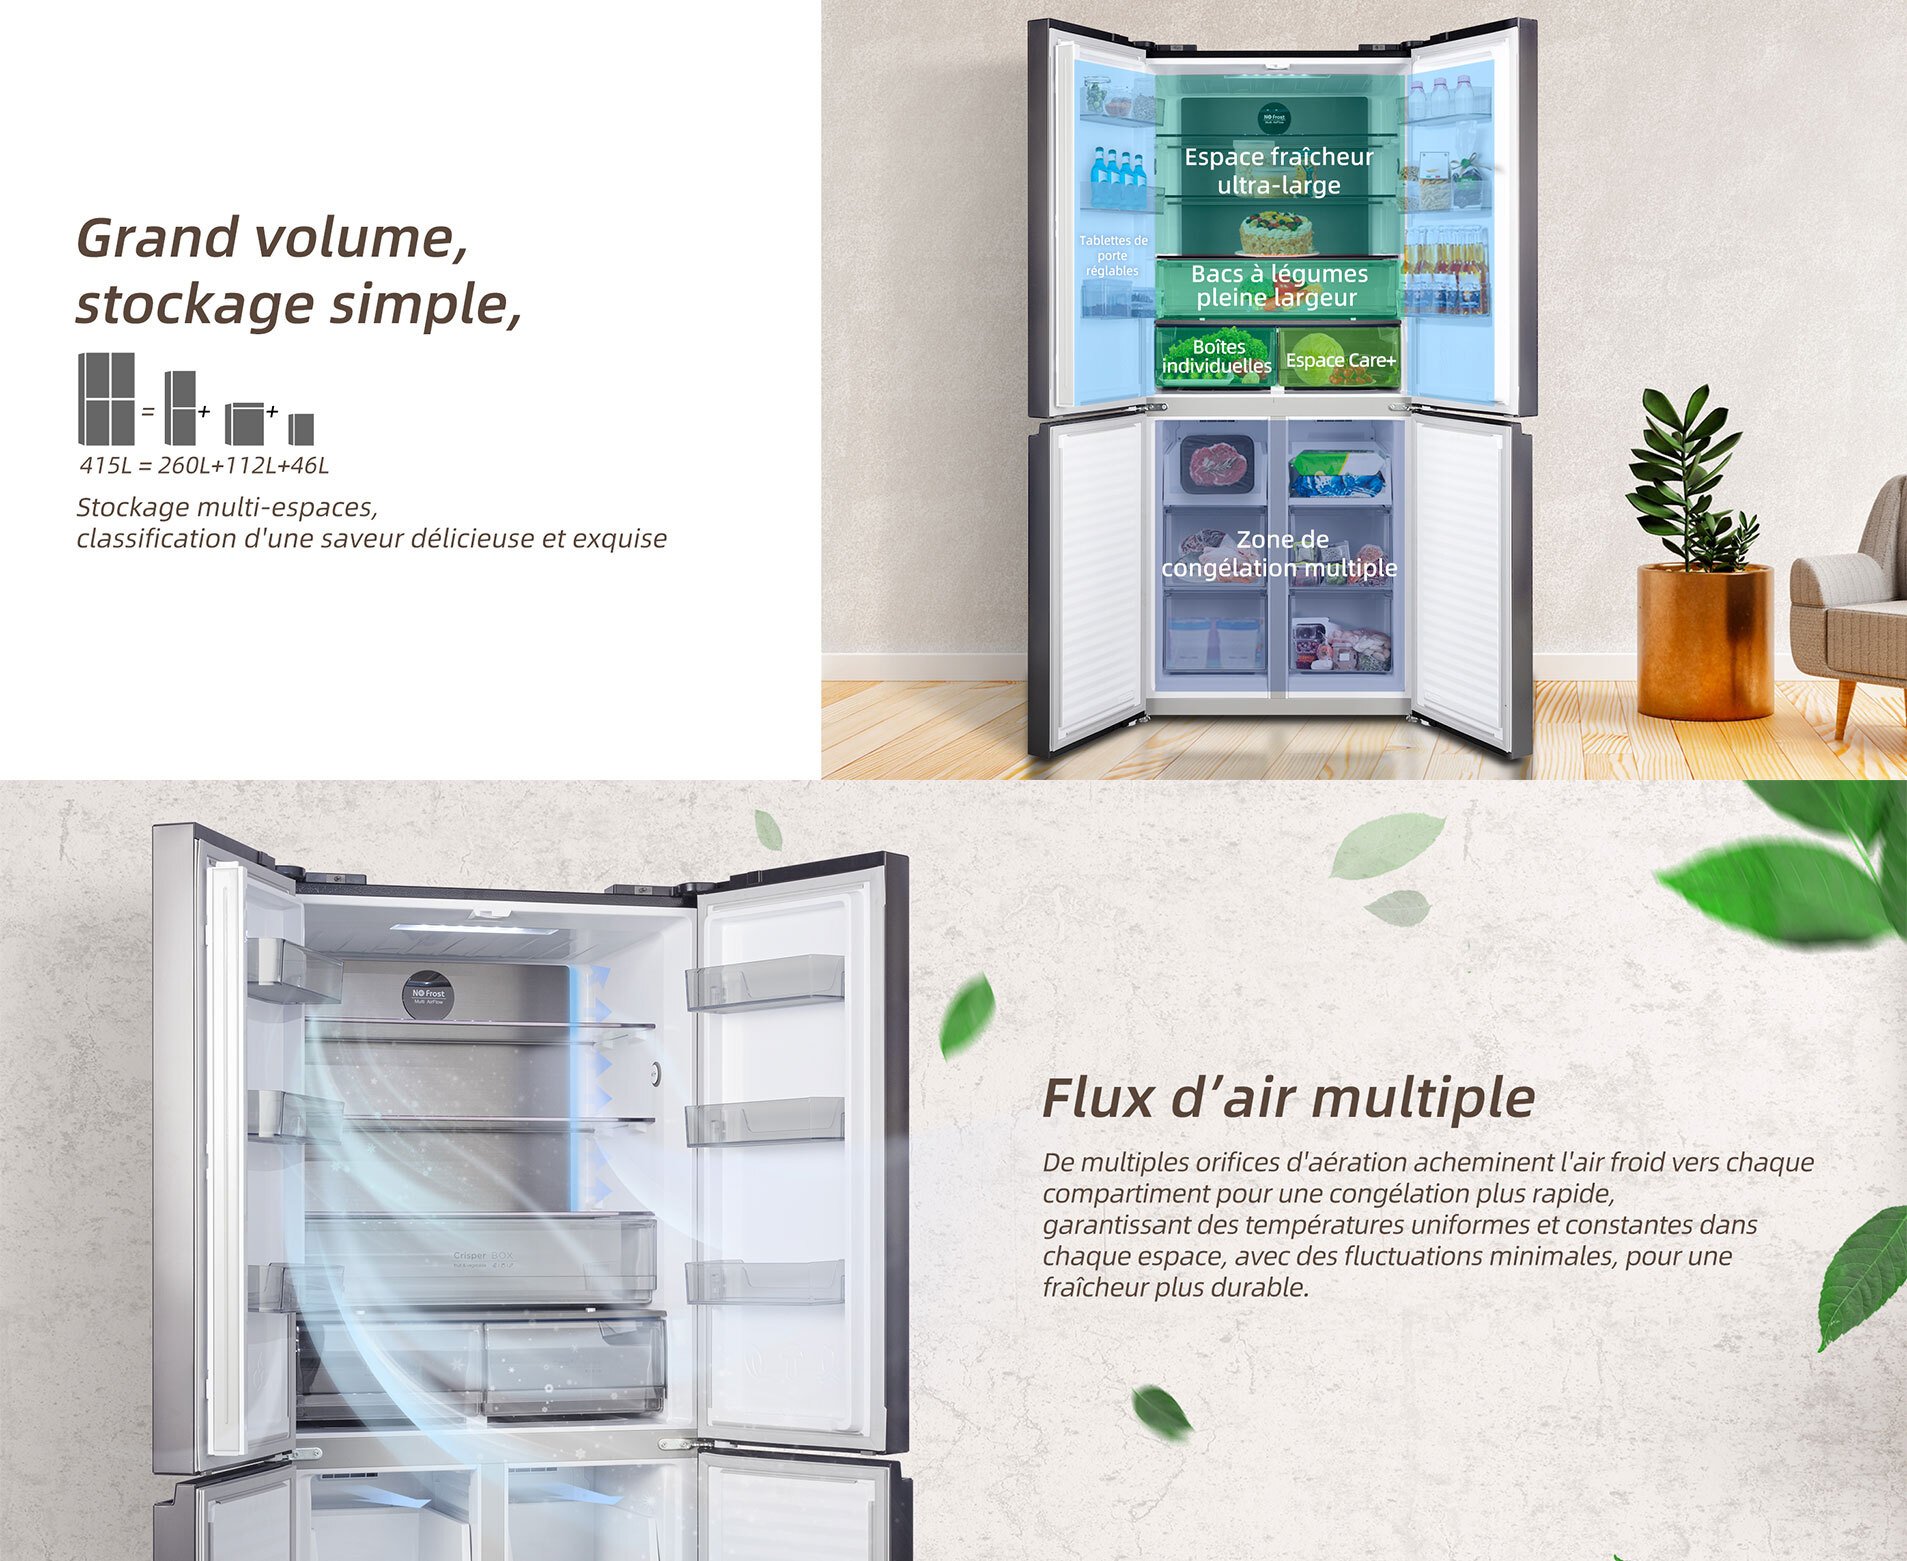 Refrigerateur congelateur en bas Changhong Réfrigérateur américain  multiportes CHiQ, CCD415NEI4E, capacité 415L, Compresseur Smart Inverter,  Inox foncé épuré, Température Care+, Contrôle de